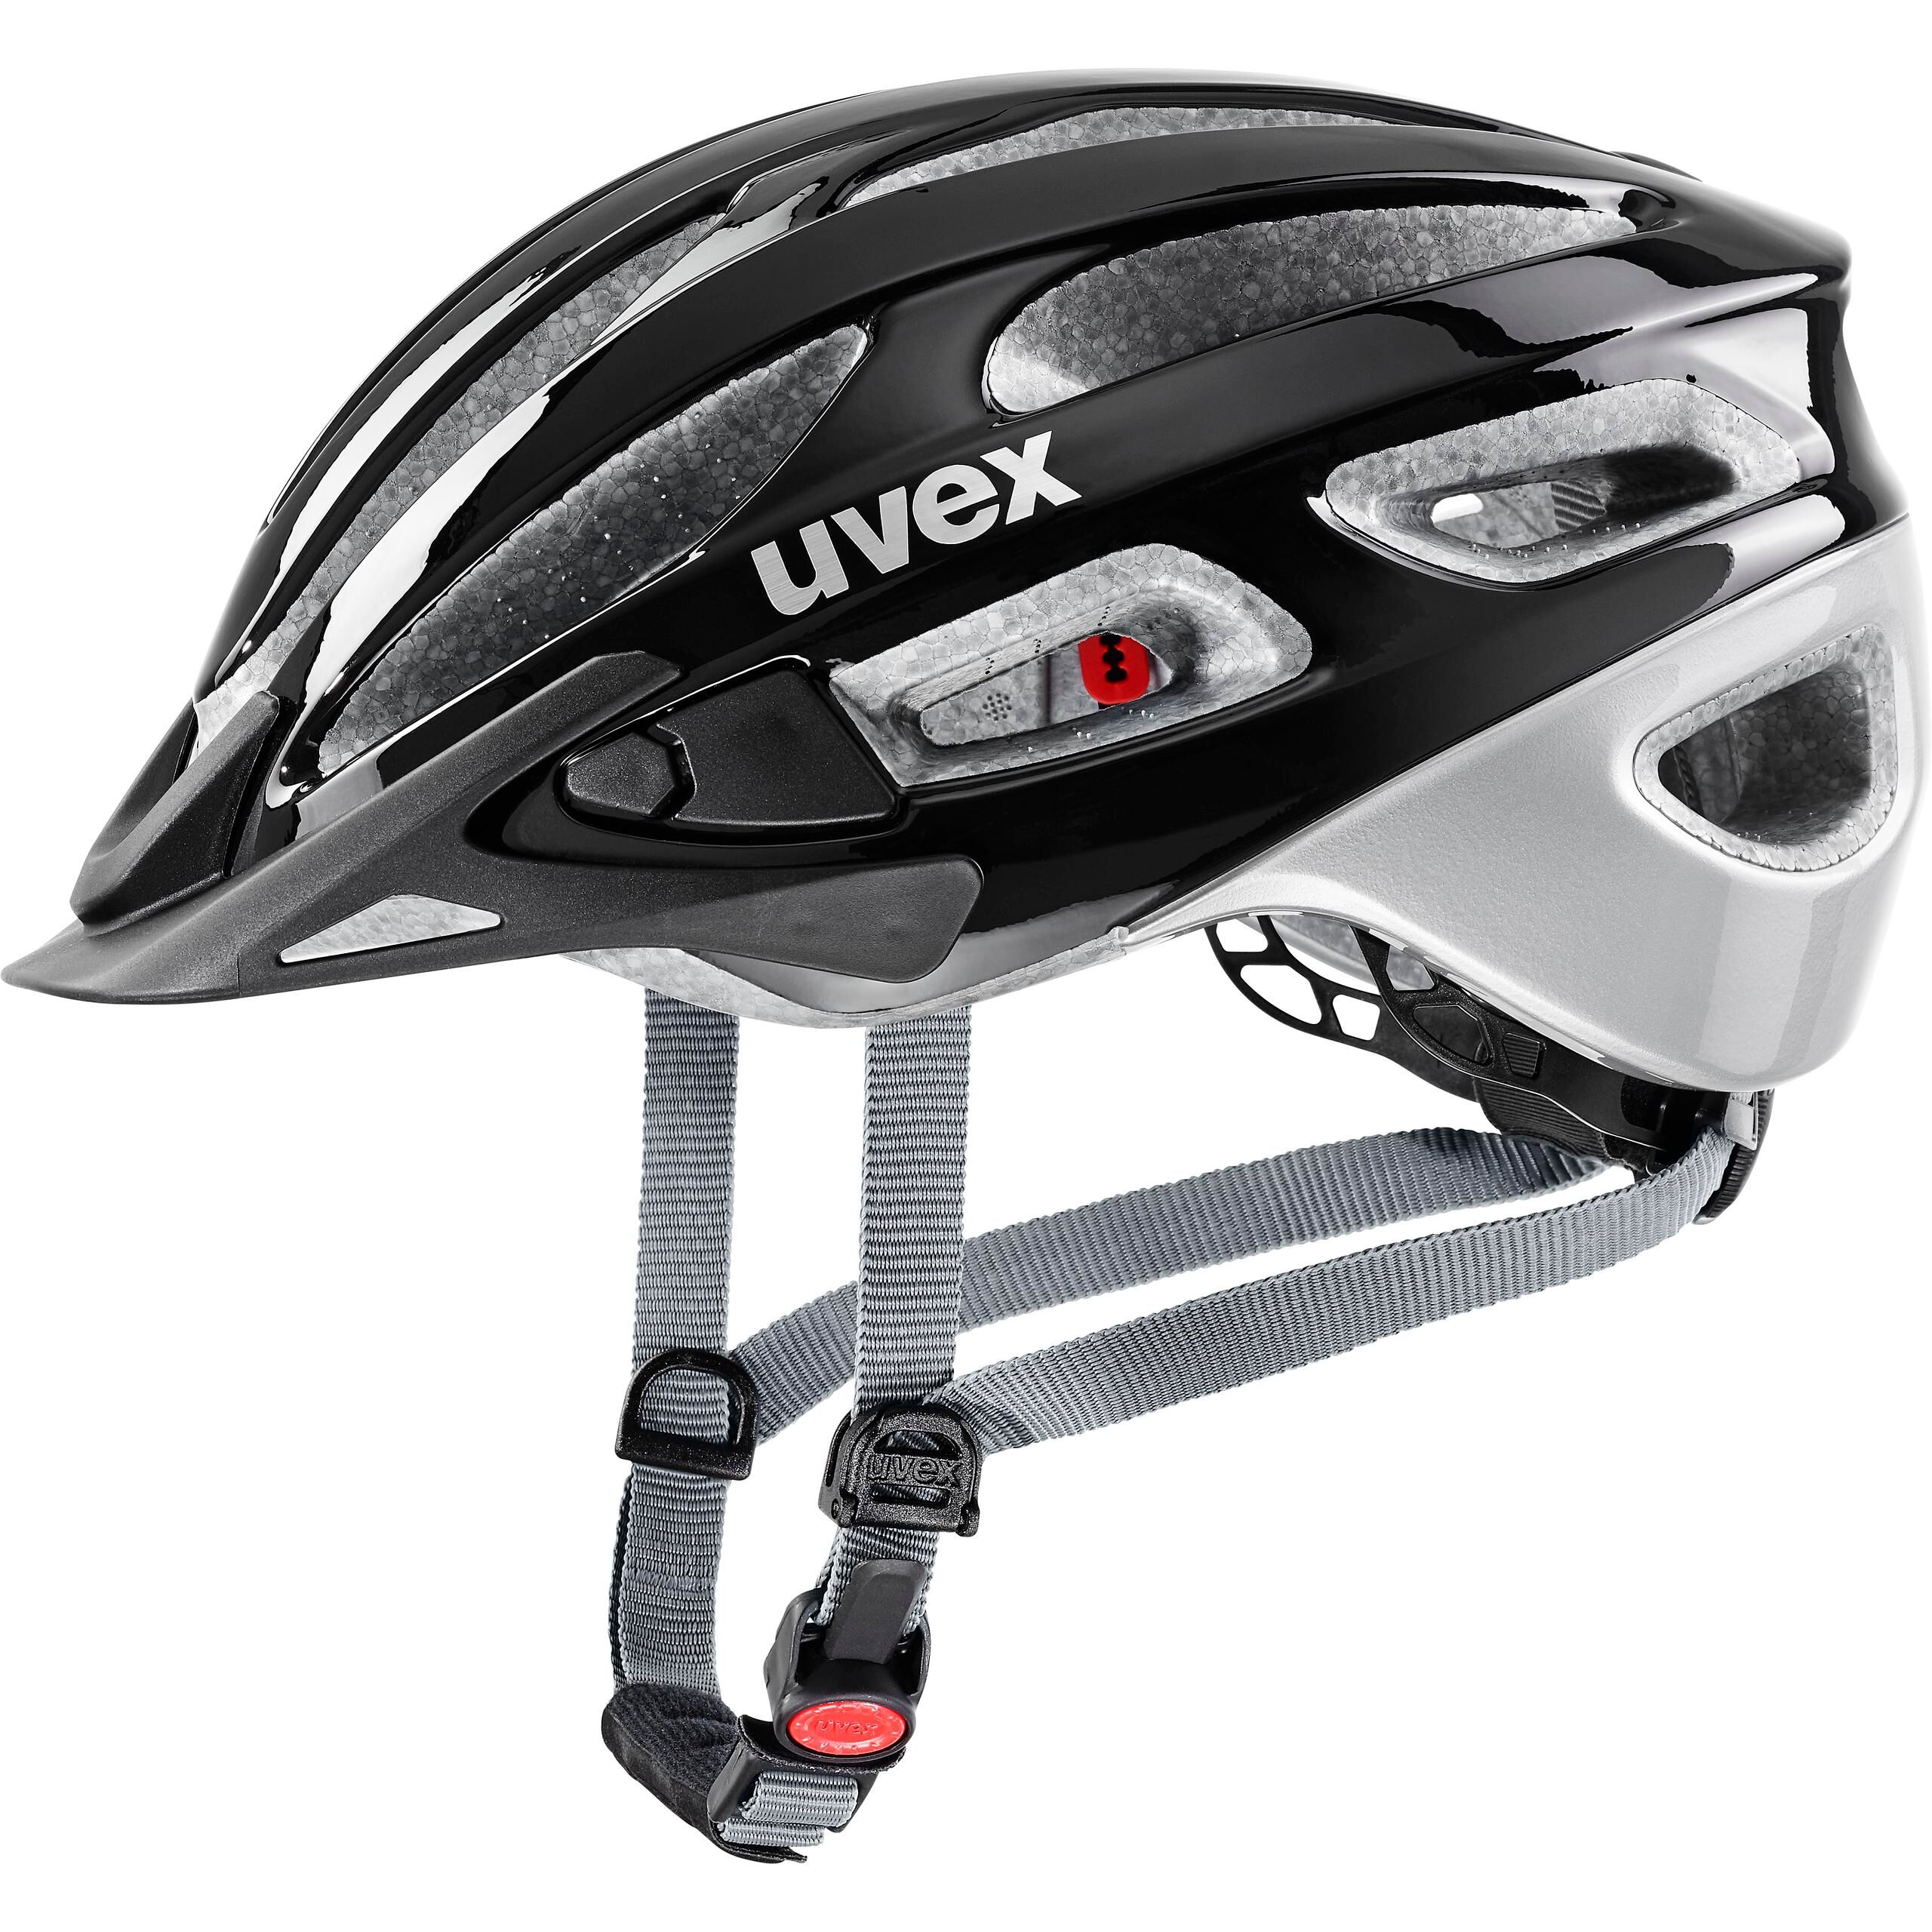 Uvex True - Road bike helmet